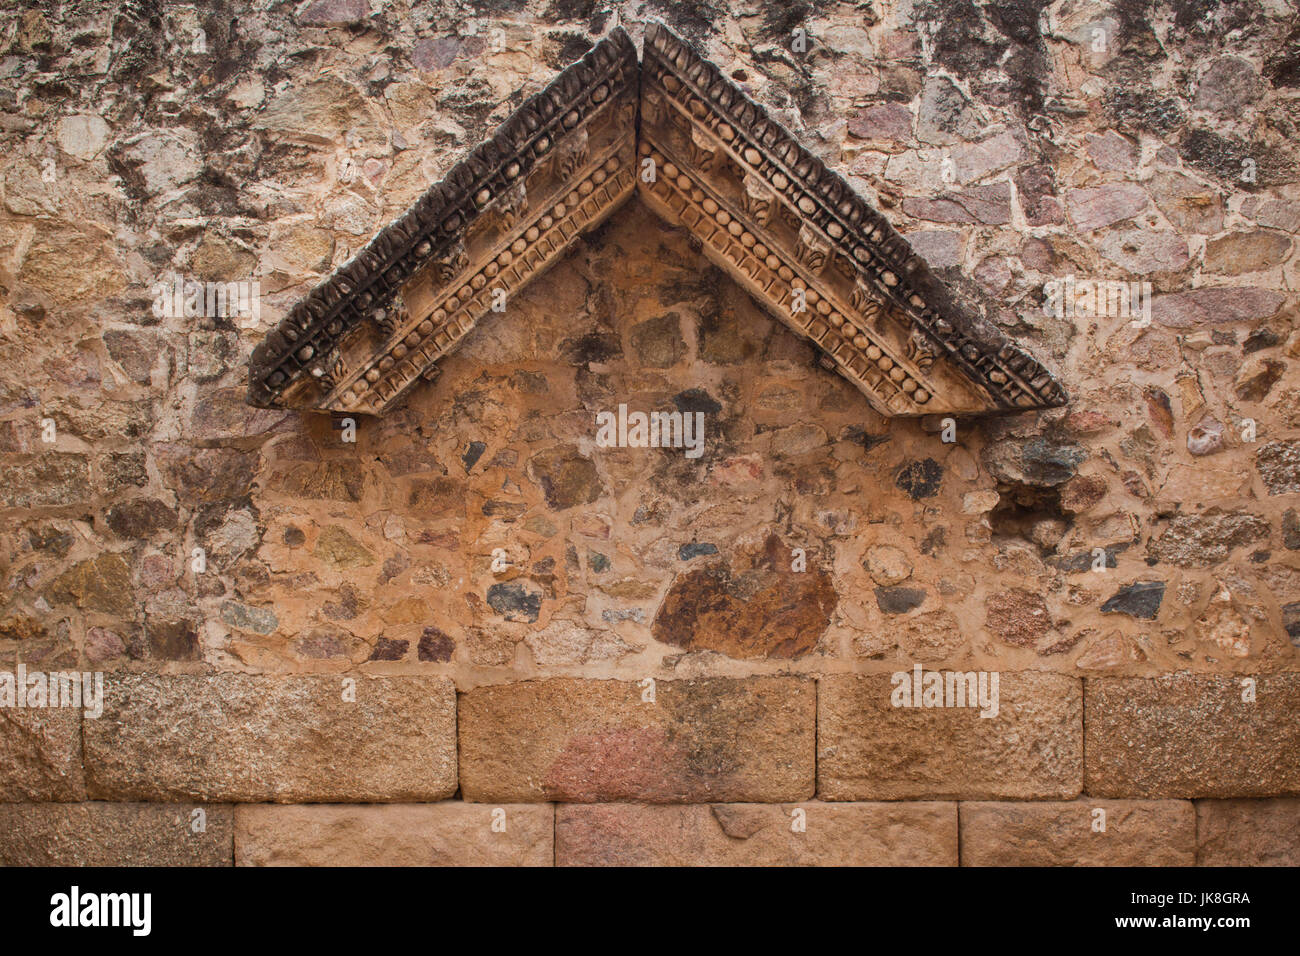 Spanien, Extremadura Region, Badajoz Provinz, Merida, Ruinen des Teatro Romano, römische Theater, 24 v. Chr. römischer Zeit Gebäude detail Stockfoto